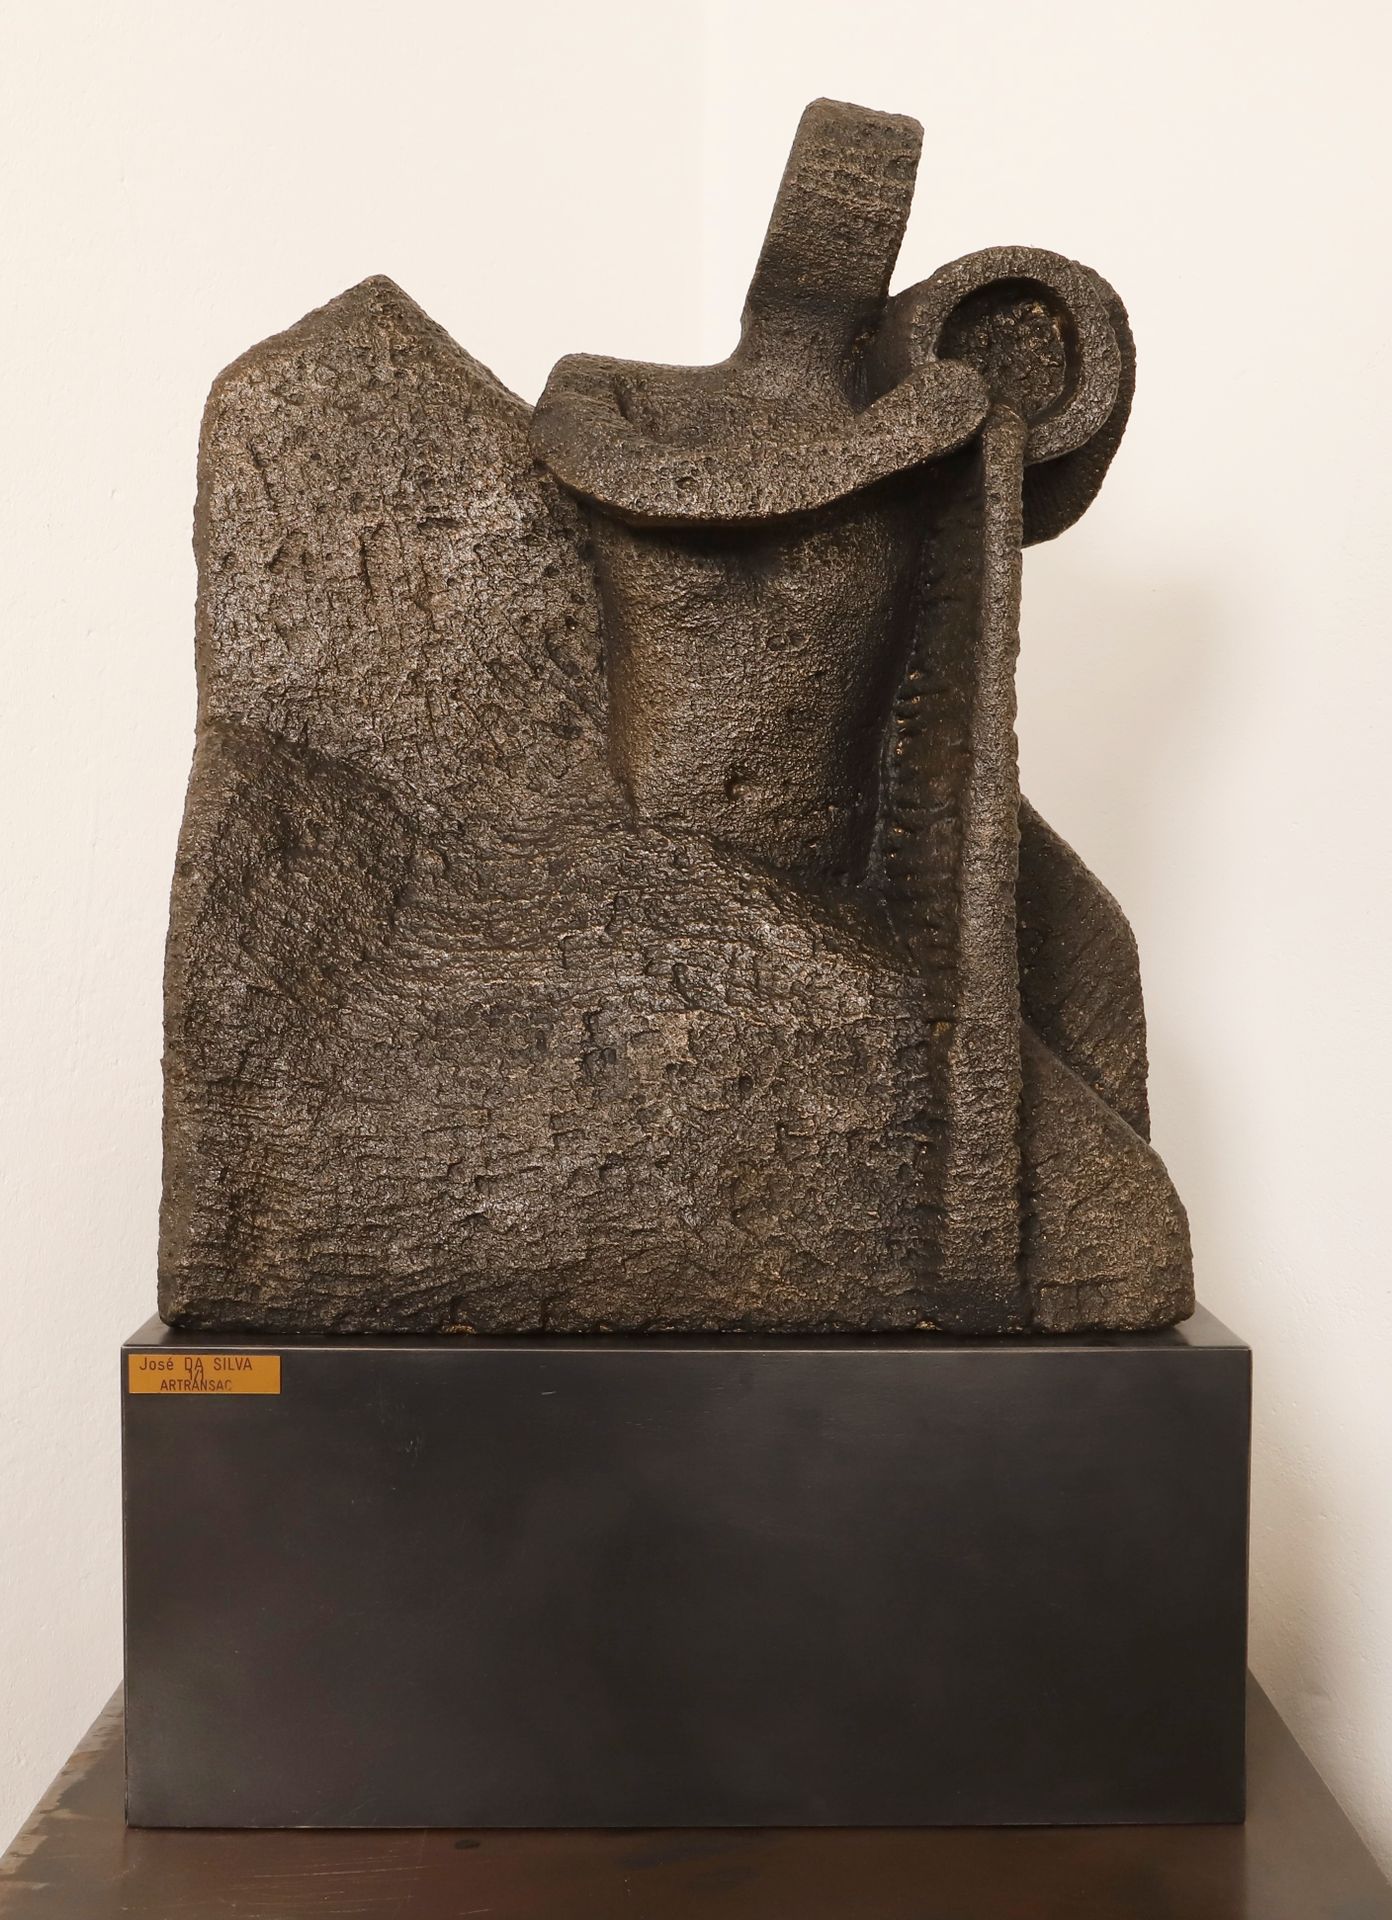 Null "Artransac" von José Da Silva

Skulptur aus patiniertem Sandstein.

Einziga&hellip;